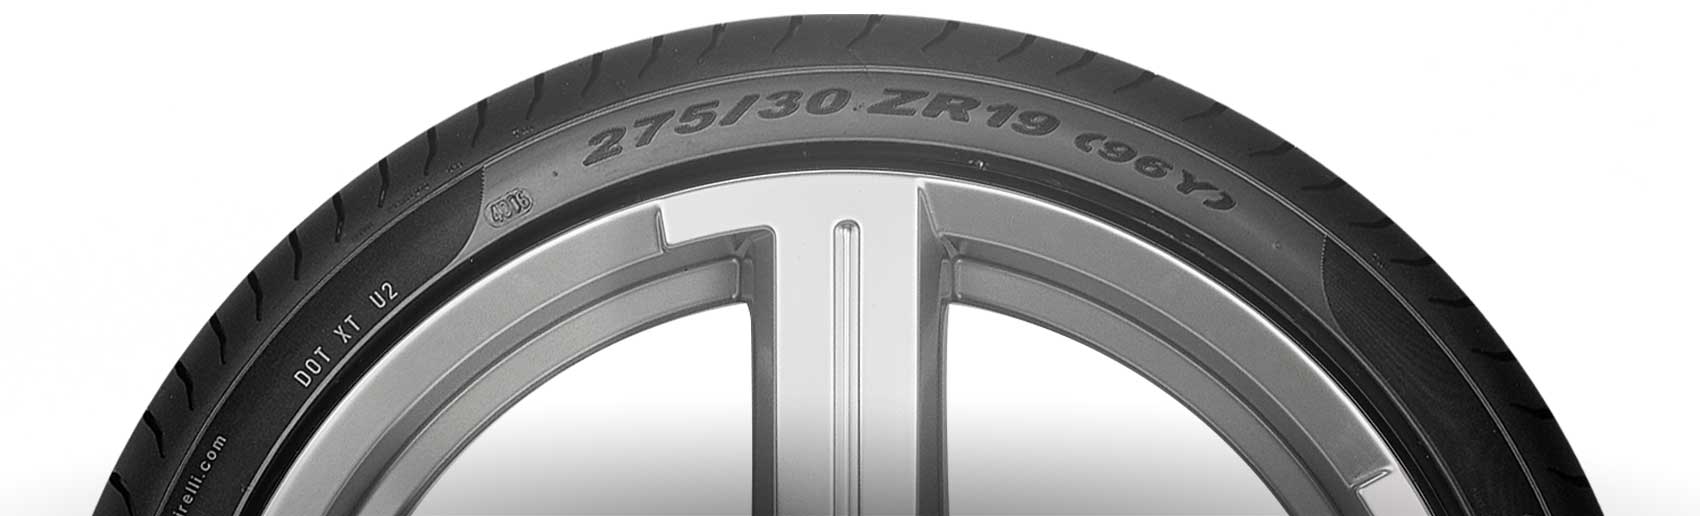 Lateral de todo o pneu traz códigos padronizados que indicam medidas, especificações e tipo de construção